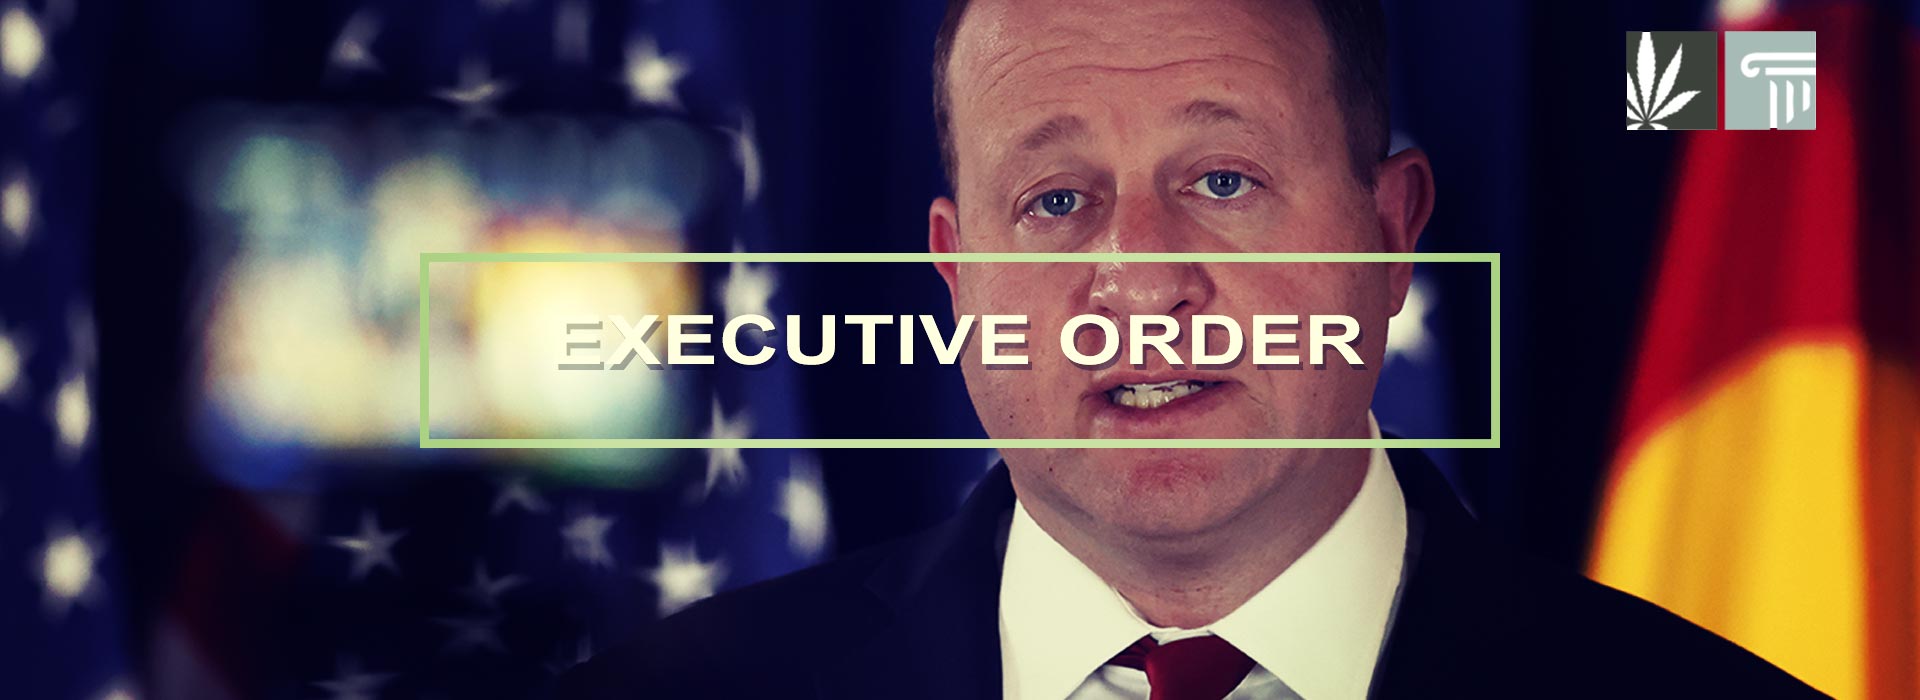 jared polklis executive order